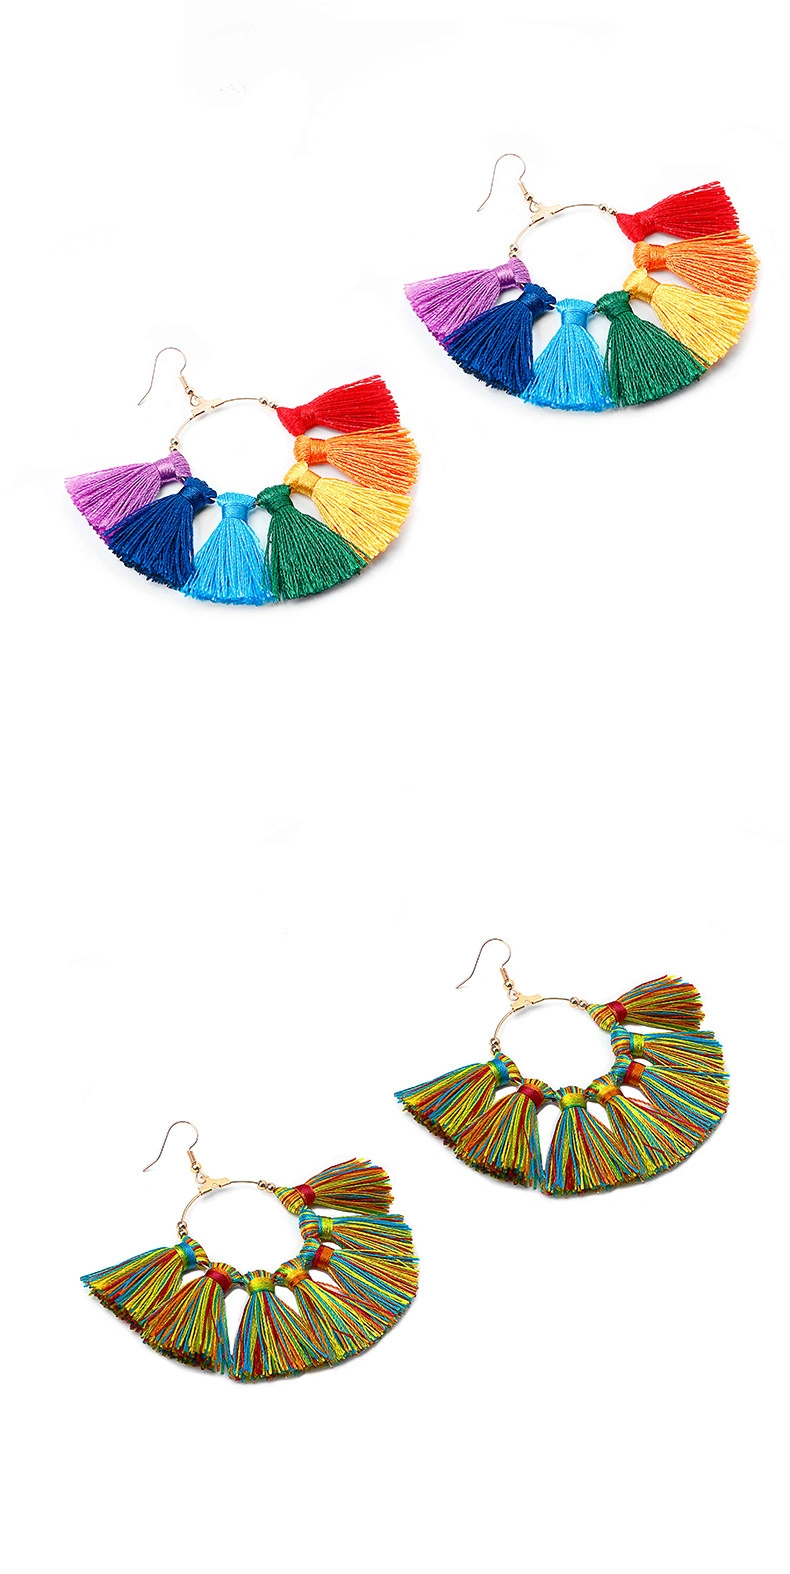 Tassel Earrings for Women Fashion Bohemian Earring Colorful Long Layered Thread Ball Dangly Earrings Tassel Stud Earrings Set